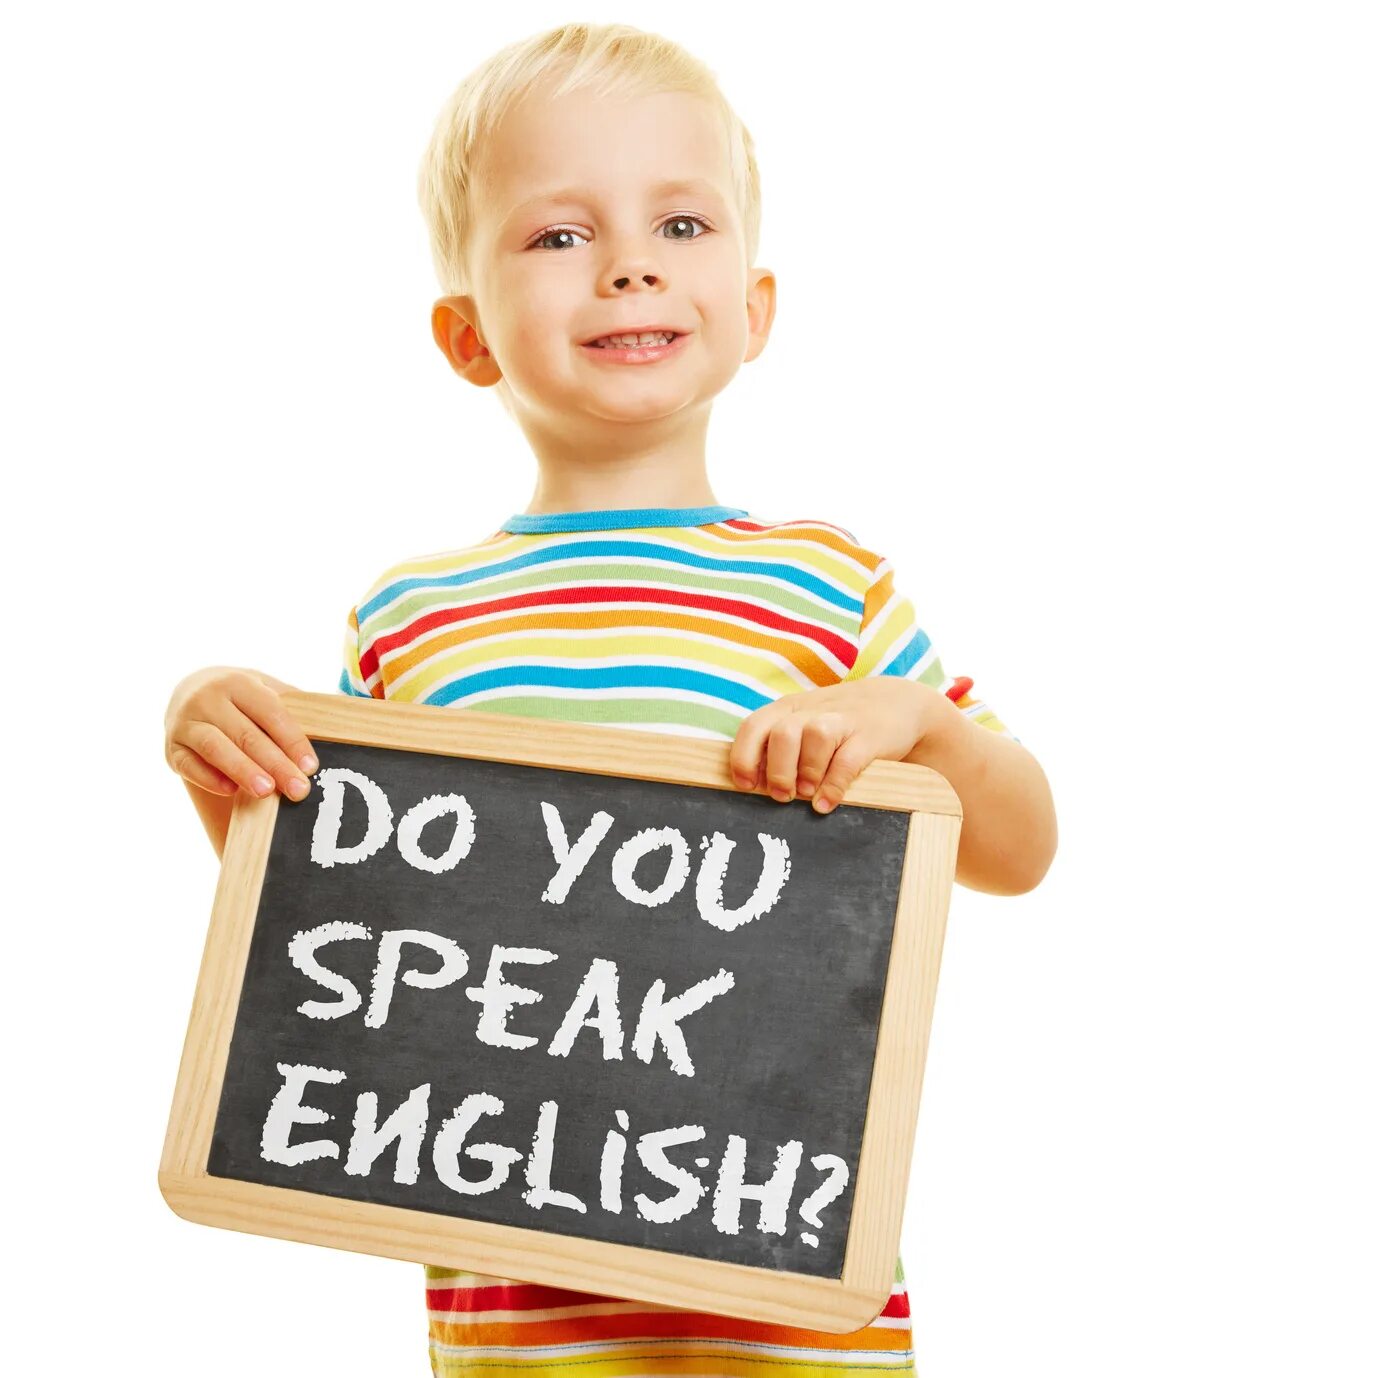 Английский язык длядеетй. Английский для детей. Английский язык для детей. Иностранные языки для детей. Ем детей на английском